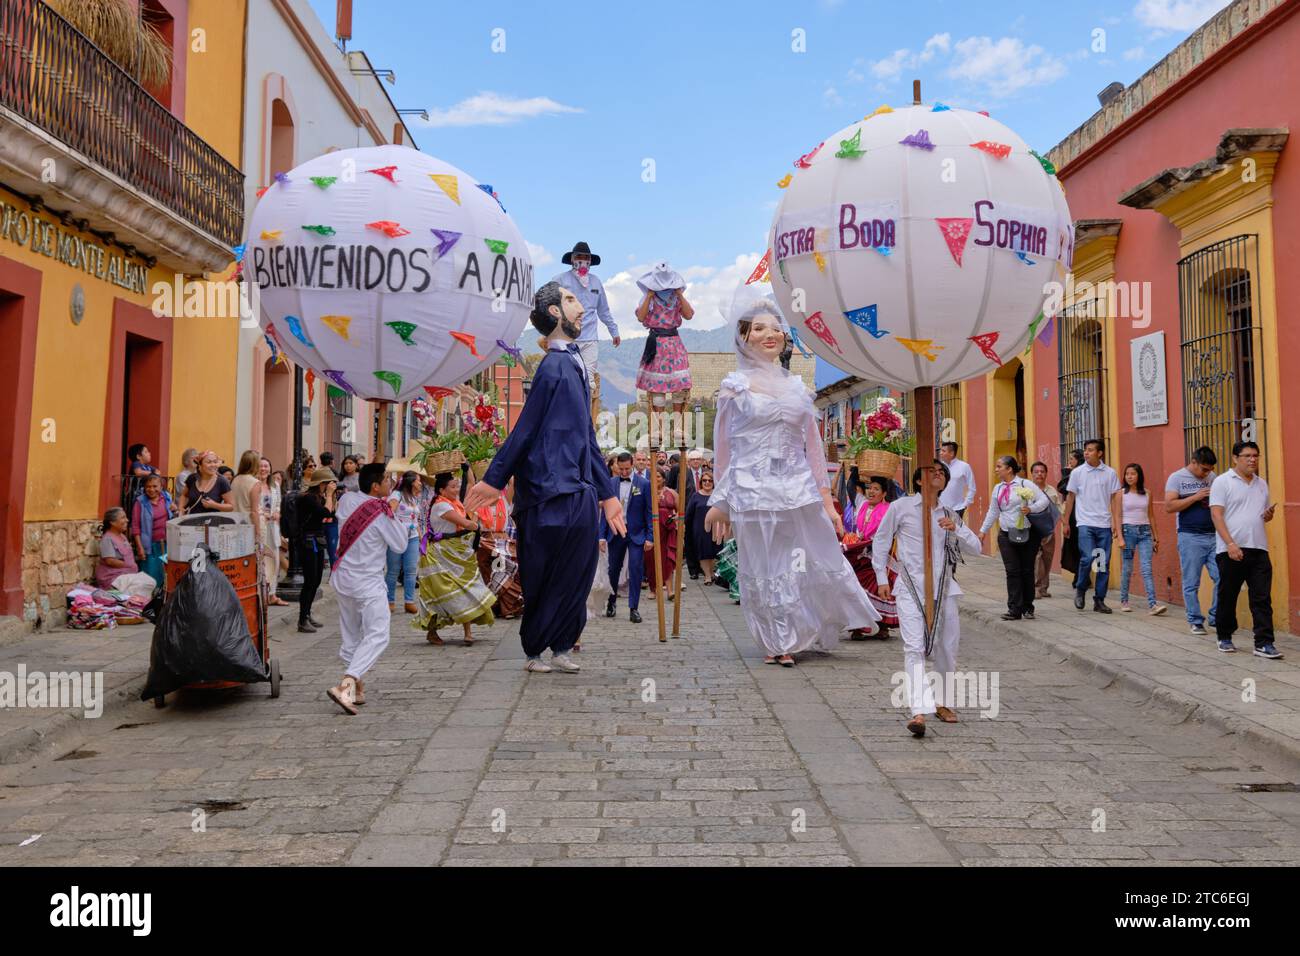 Marionetta gigante della sposa e dello sposo con grande palla parte della tradizionale sfilata nuziale Calenda de Bodas per le strade di Oaxaca. Foto Stock